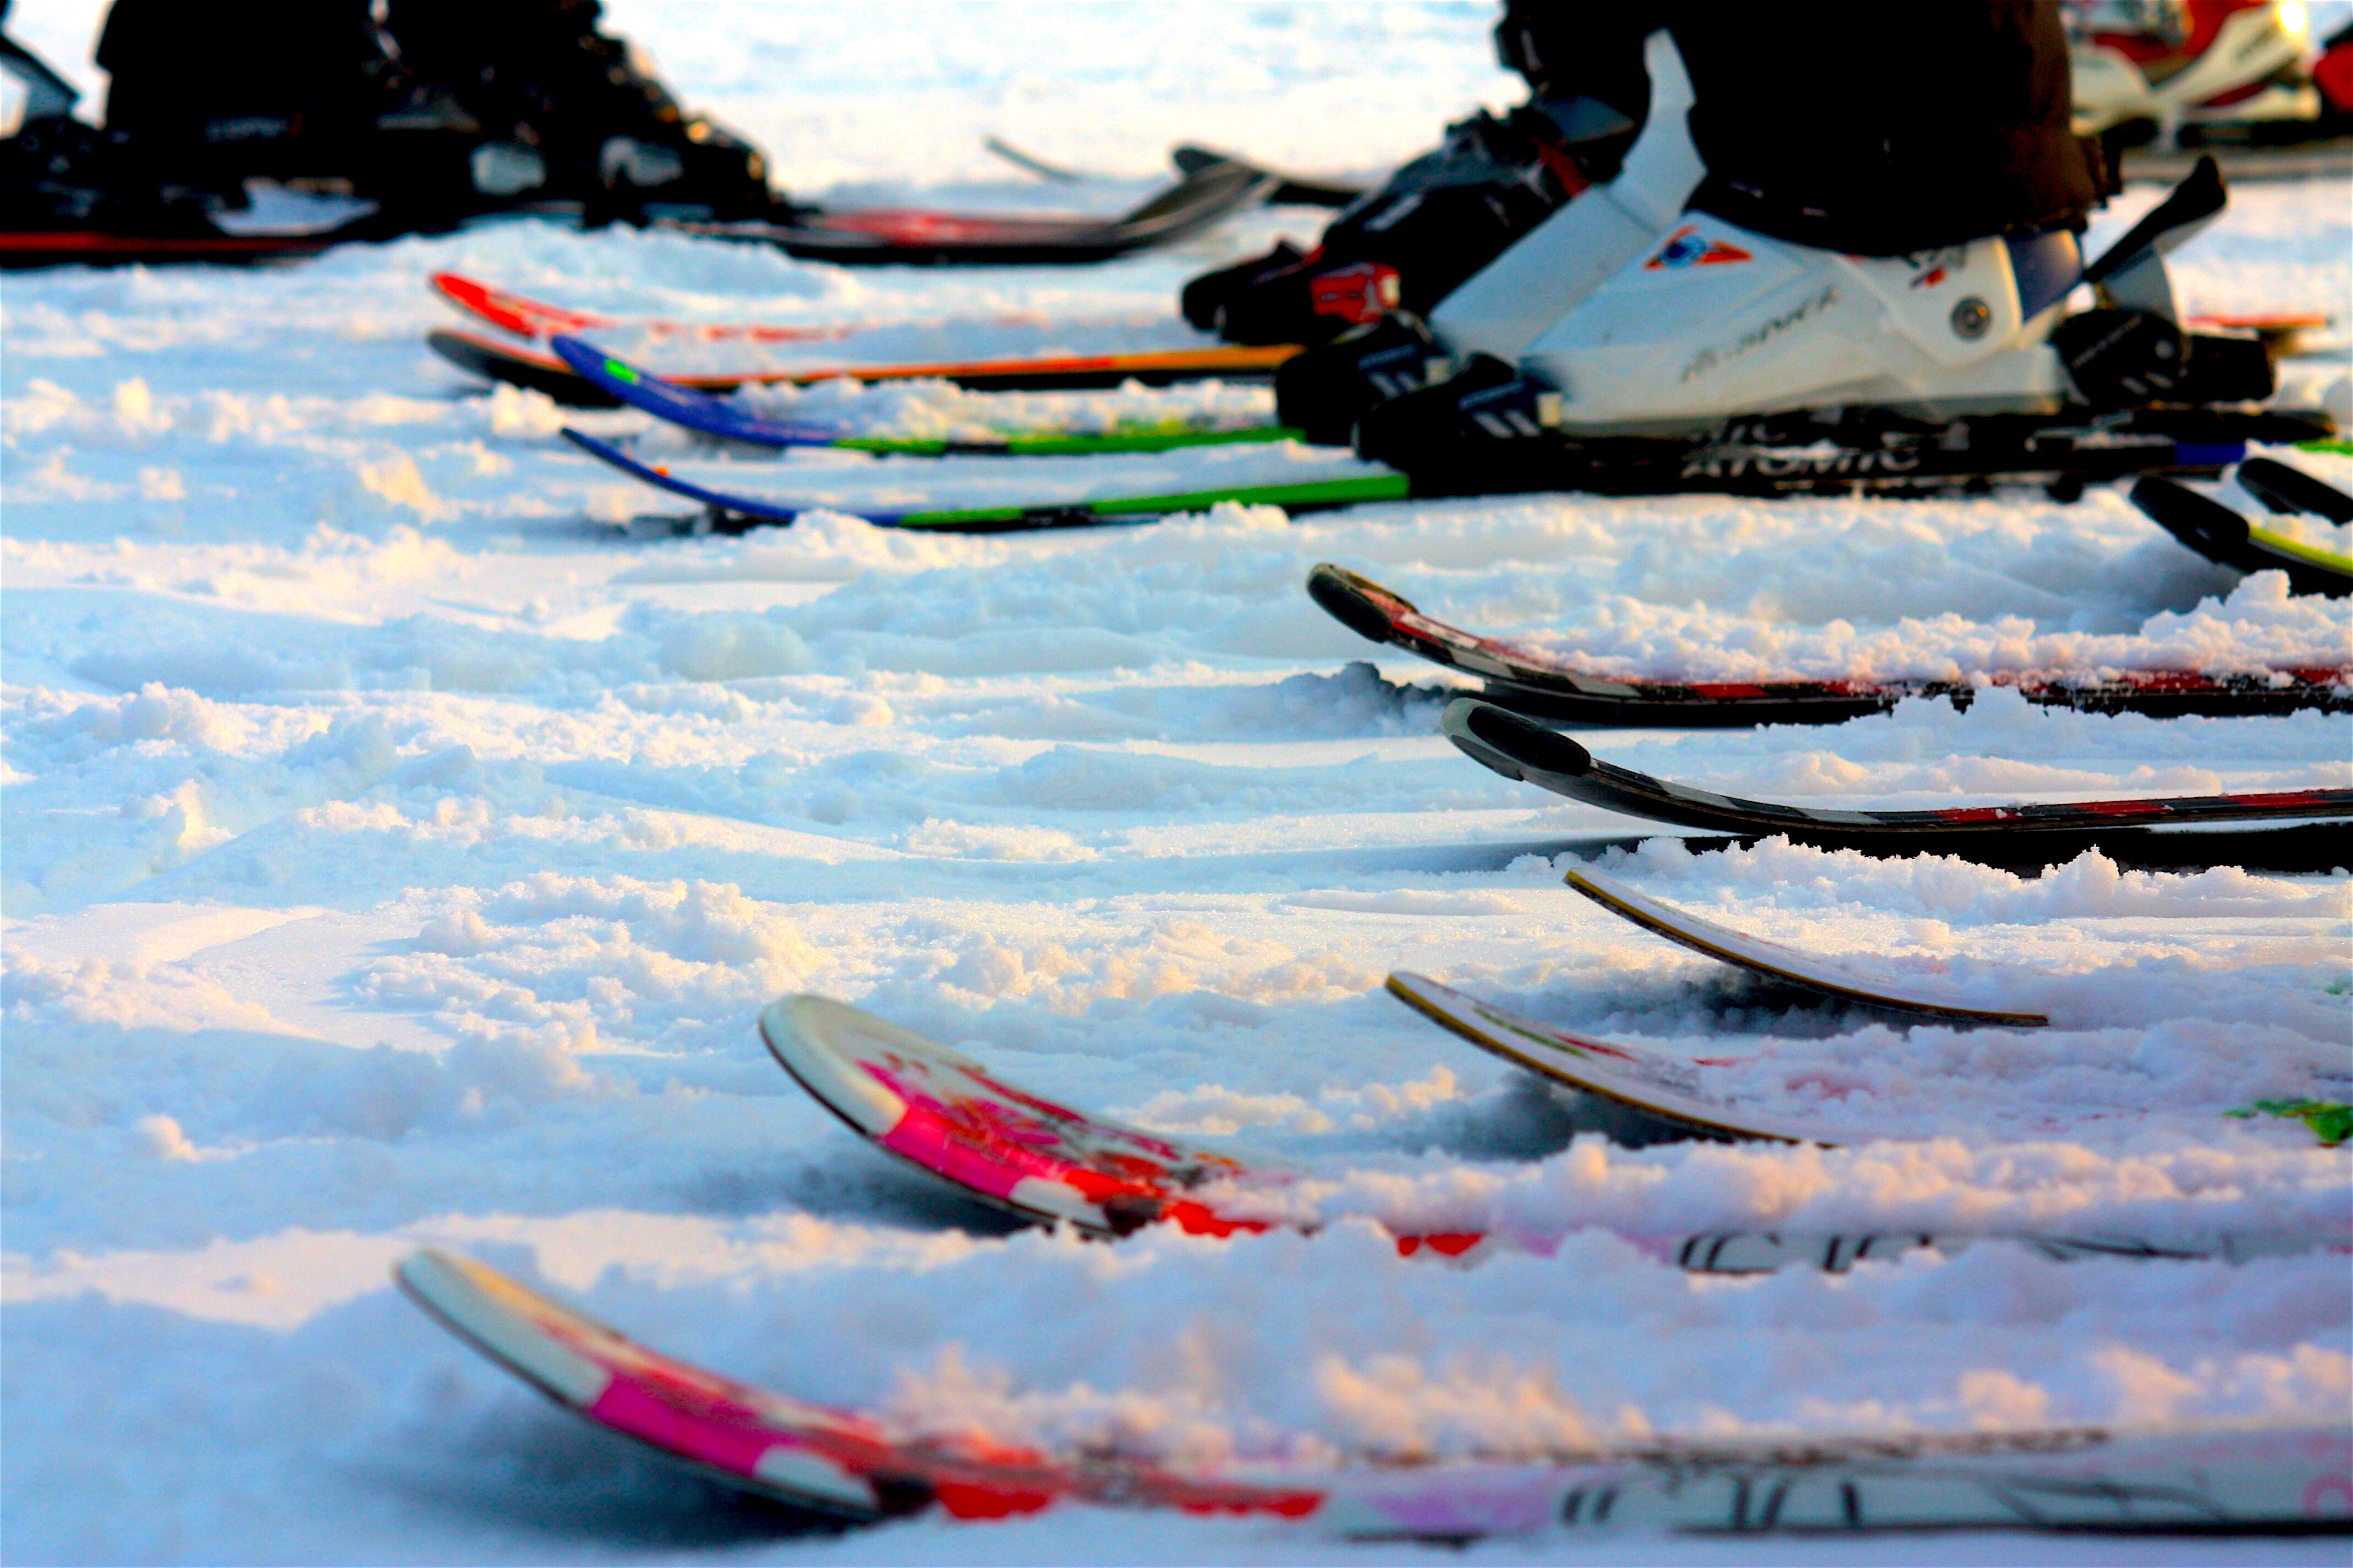 snow skie blade lot